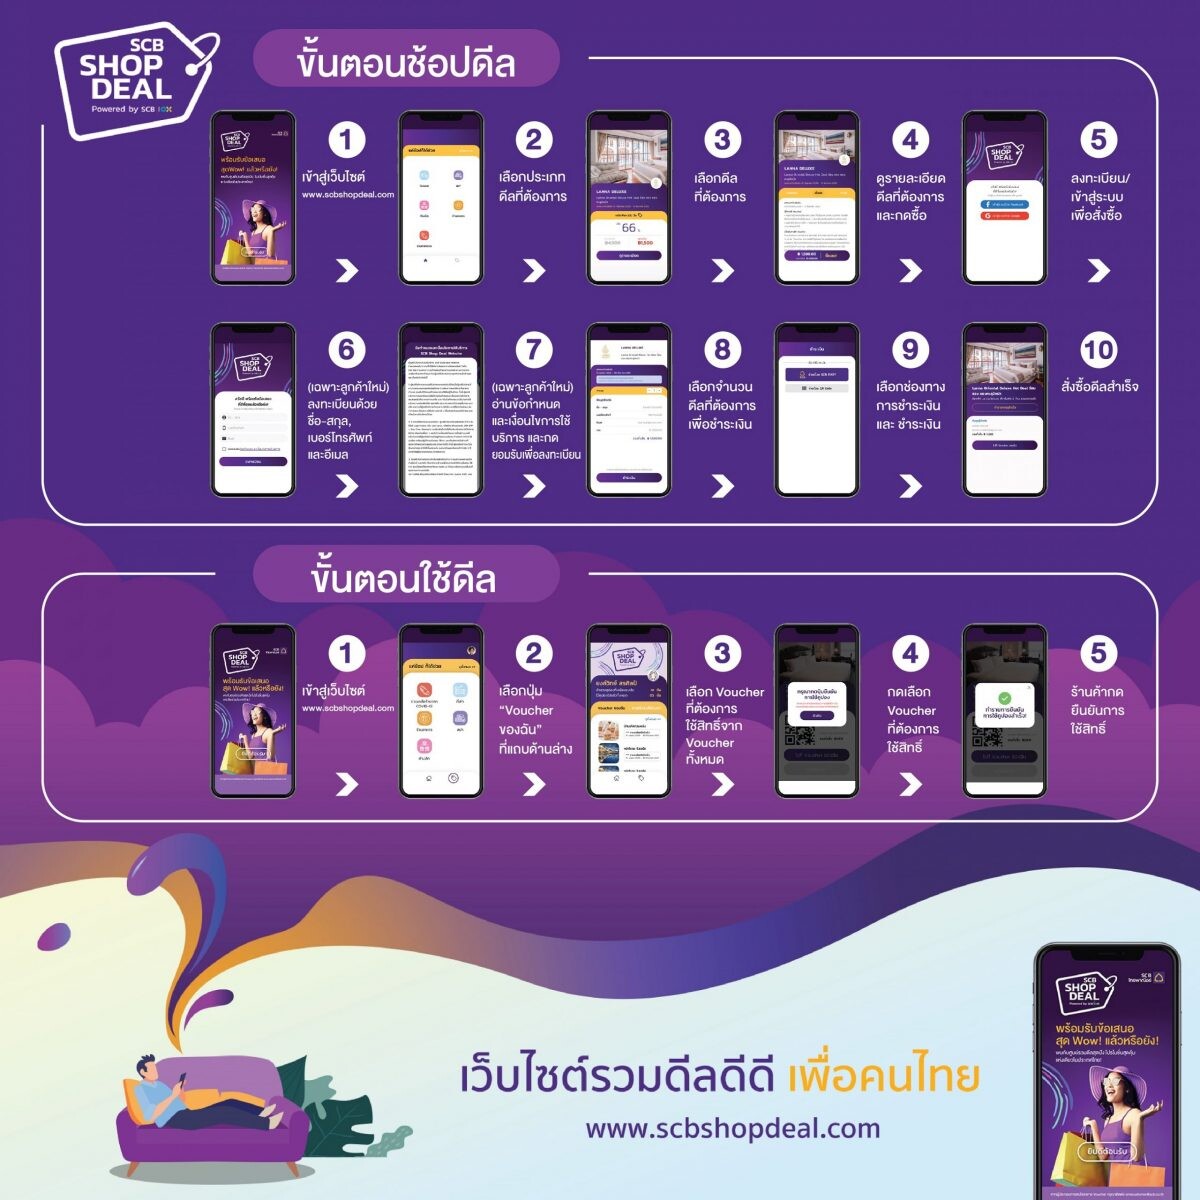 SCB จับมือ ททท. และ สทท. ปลุกพลังไทยช่วยไทยอีกระลอก ปิ๊งไอเดียเปิดแพลตฟอร์มออนไลน์ www.SCBShopDeal.com มัดรวมซูเปอร์ดีลท่องเที่ยว ชวนคน “ชอบดีล” อุดหนุน SME ไทยปั๊มยอดขายช่วงโควิด-19